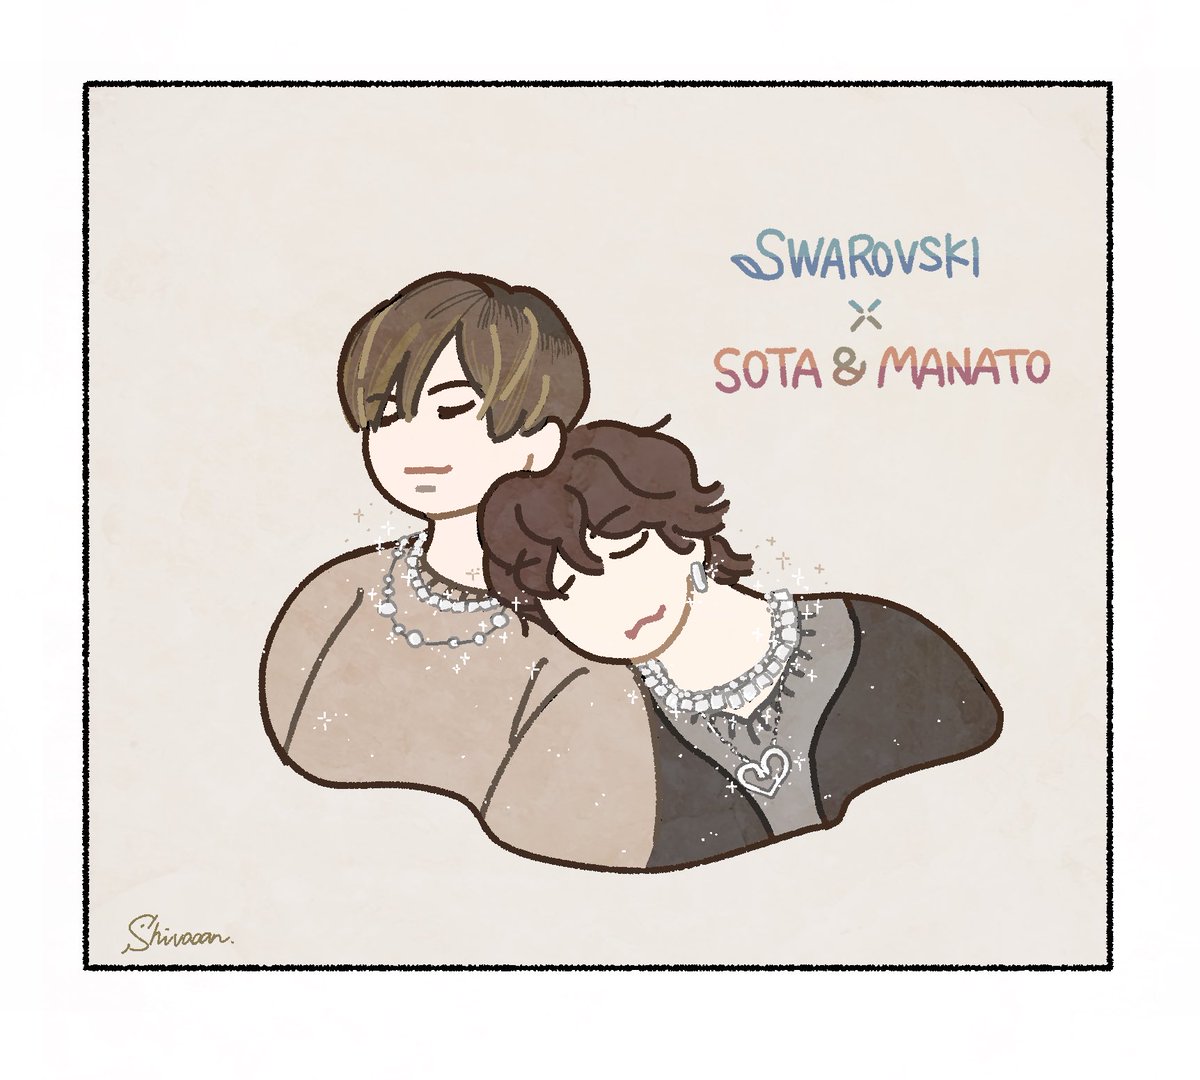 スワロ × SOTA & MANATO 
#BEFIRSTファンアート 